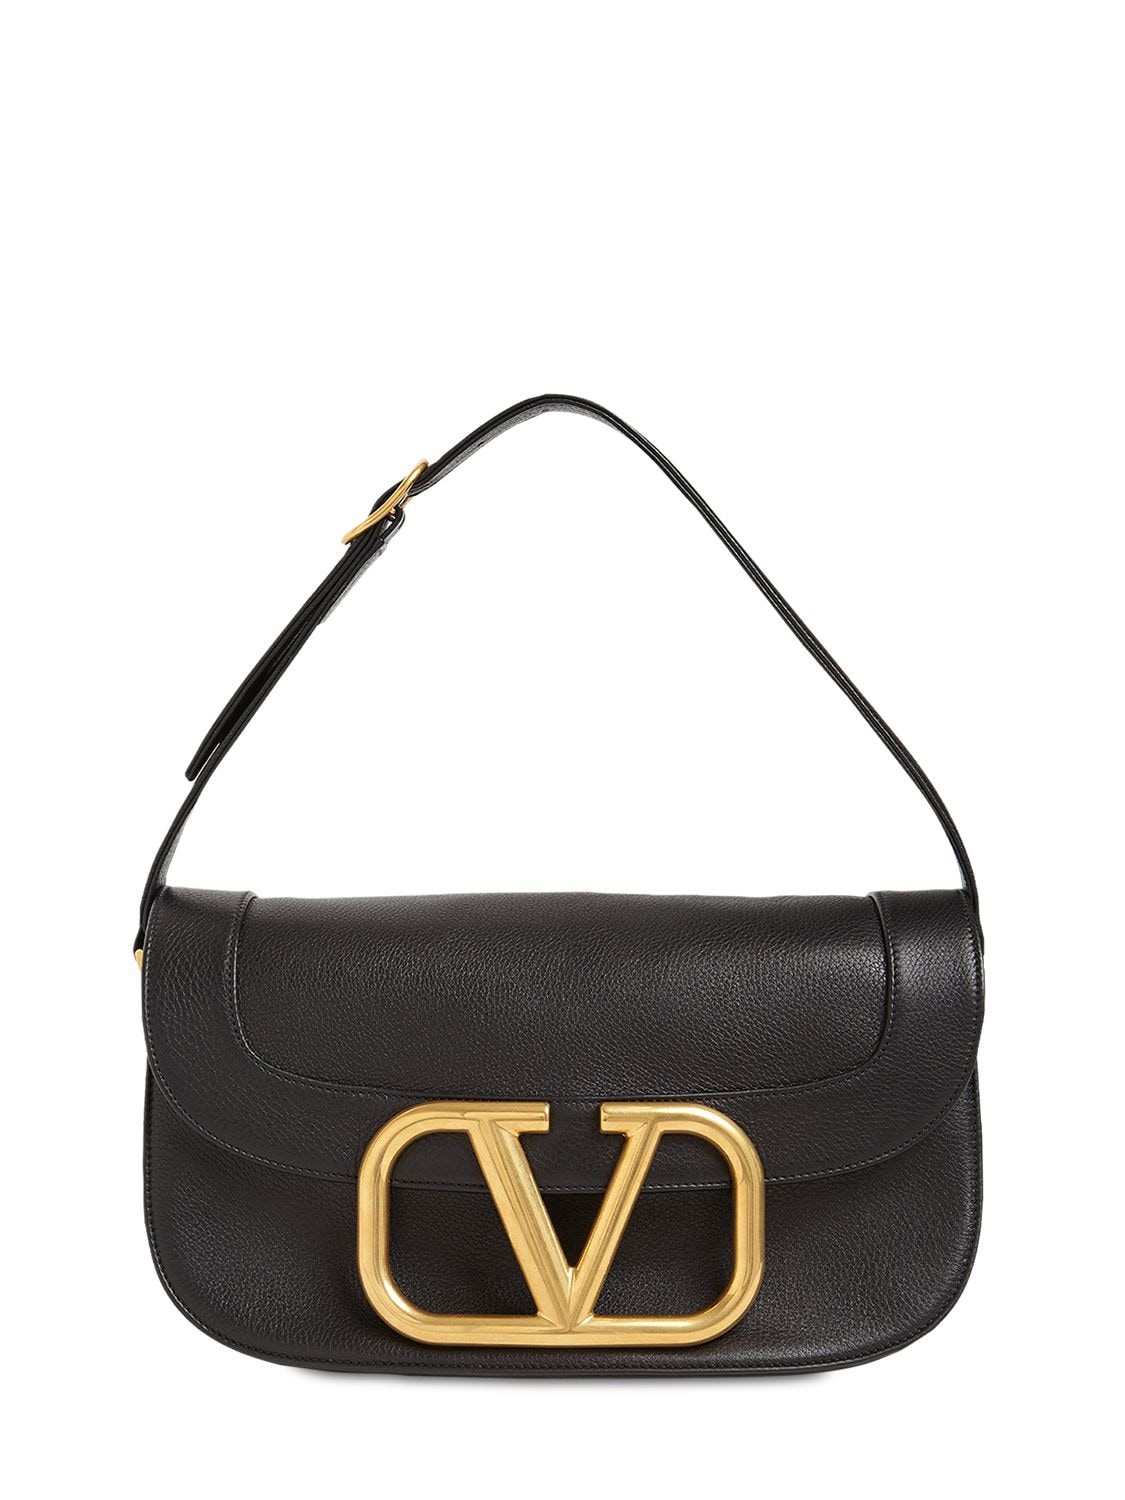 Valentino Garavani Large Supervee Leather Shoulder Bag In Black